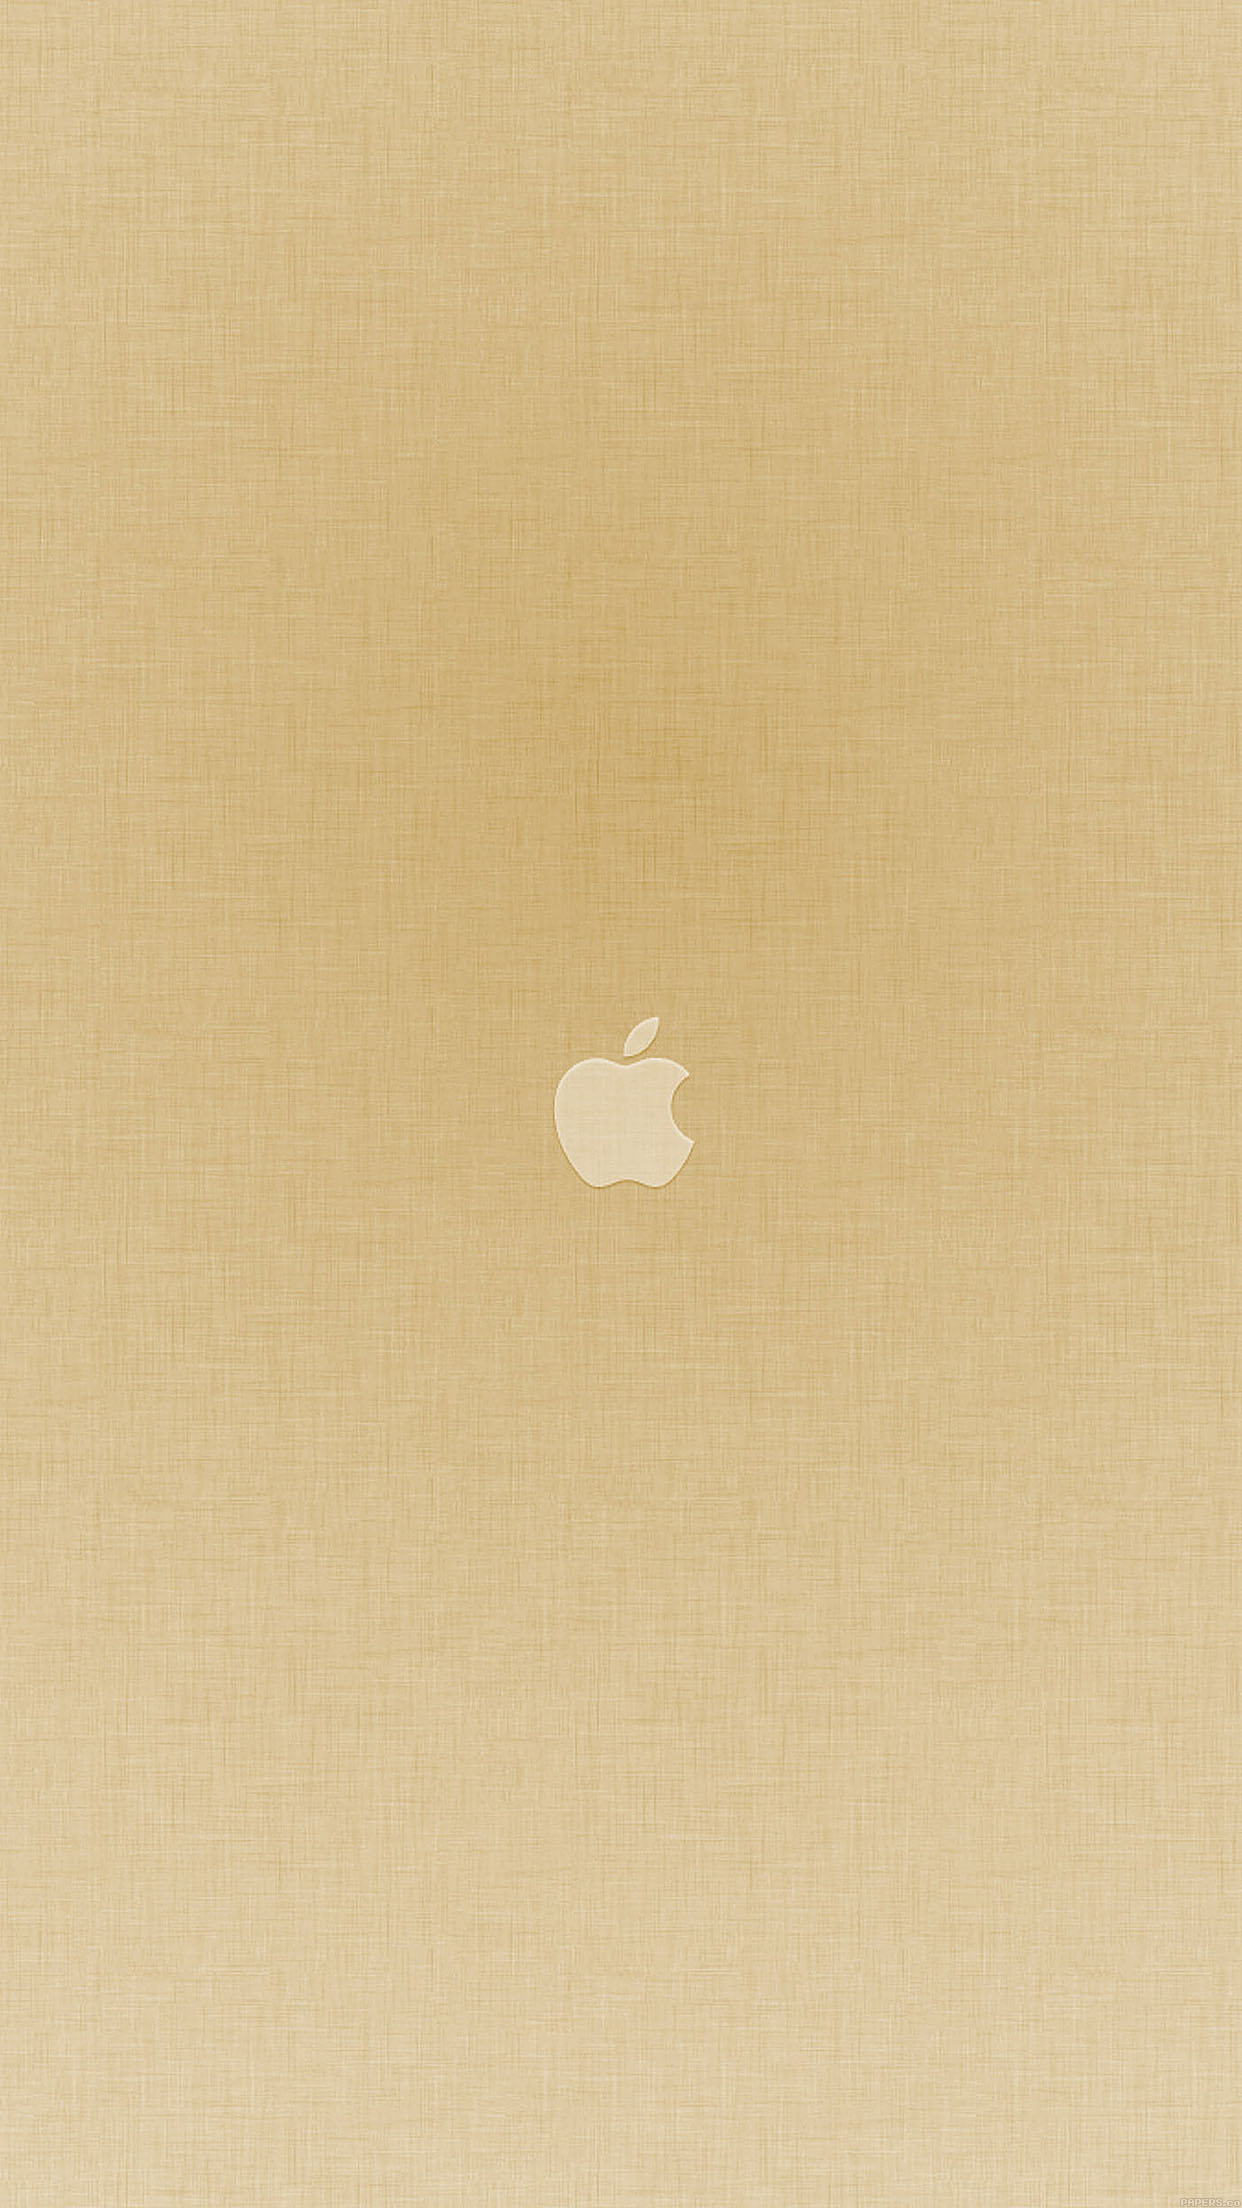 Download Gambar Wallpaper Gold Iphone terbaru 2020